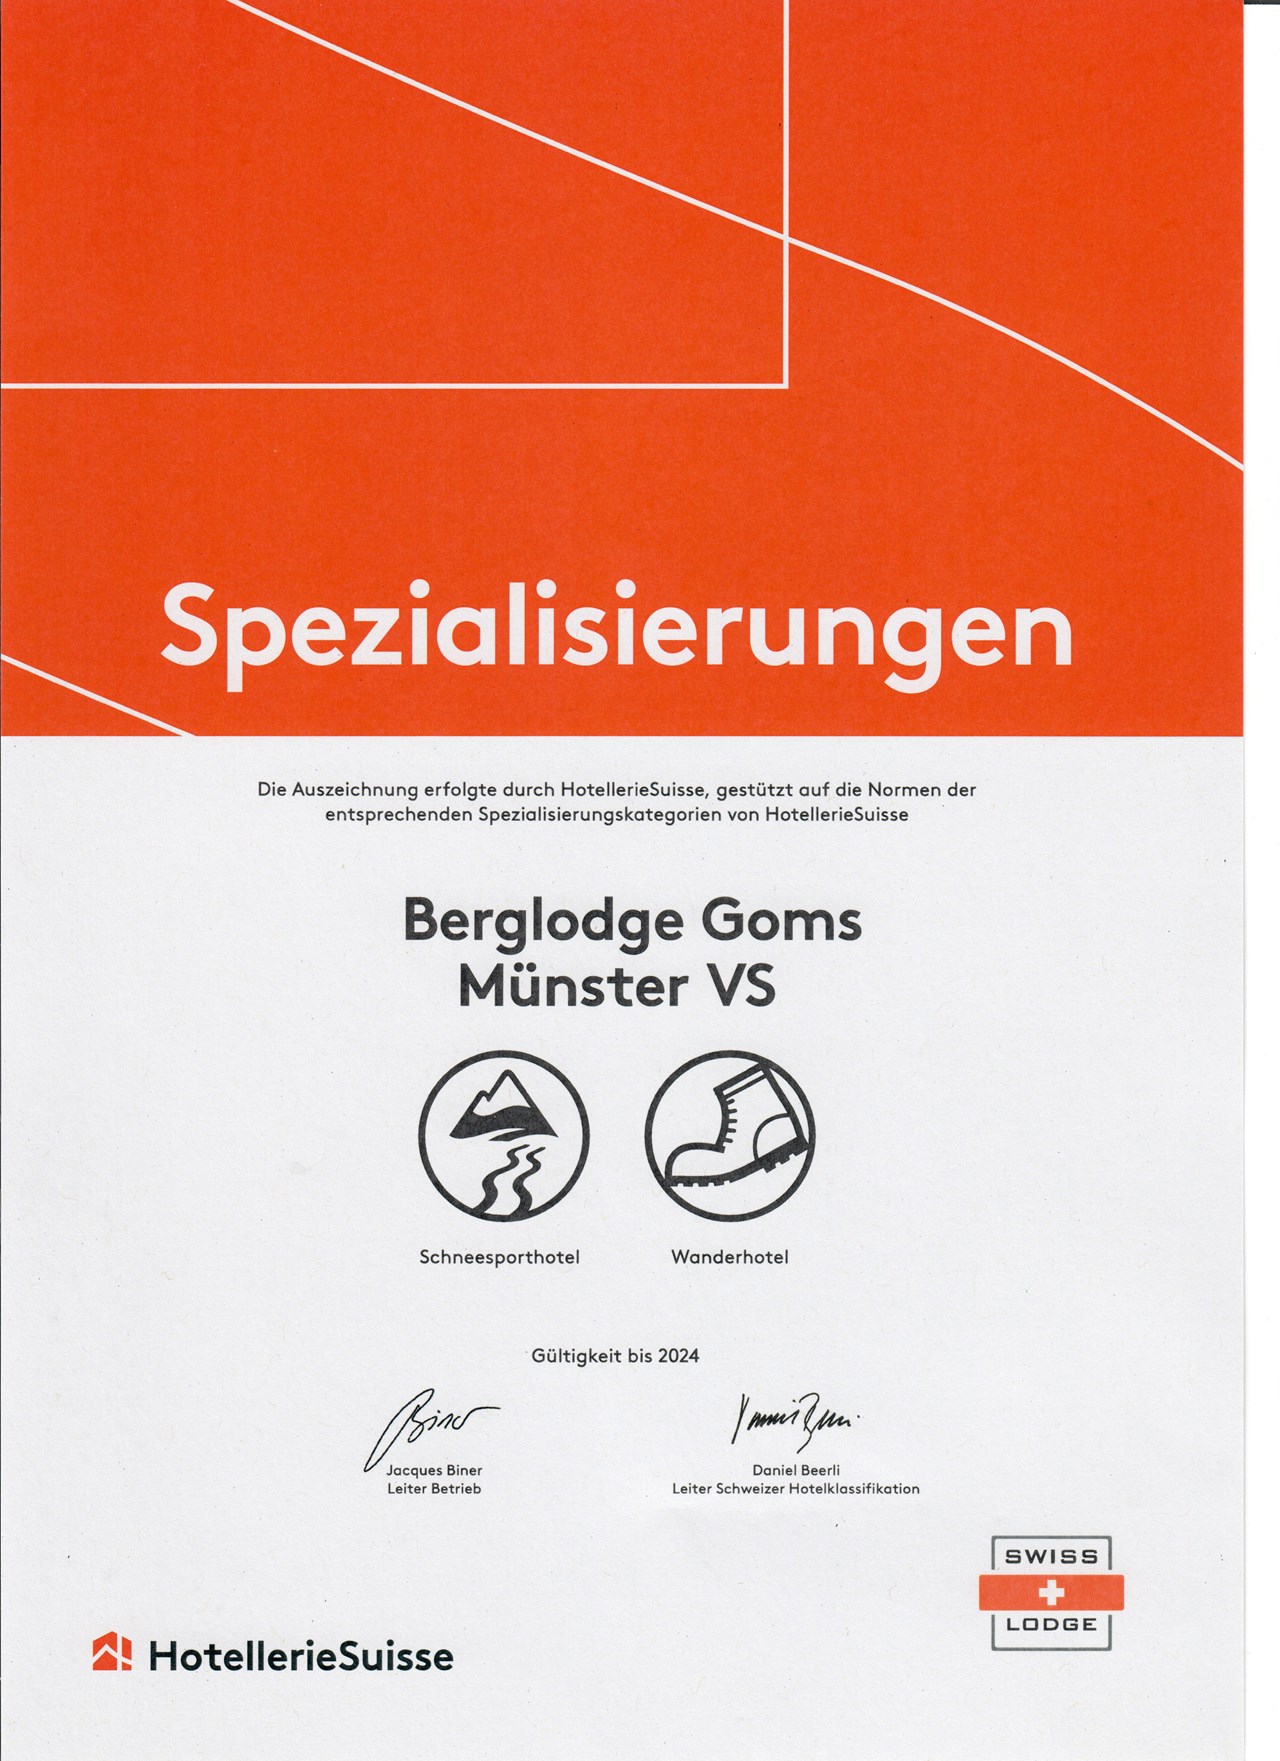 Berglodge Goms Nachweise Zertifikate Auszeichnung Schneesporthotel und Wanderhotel